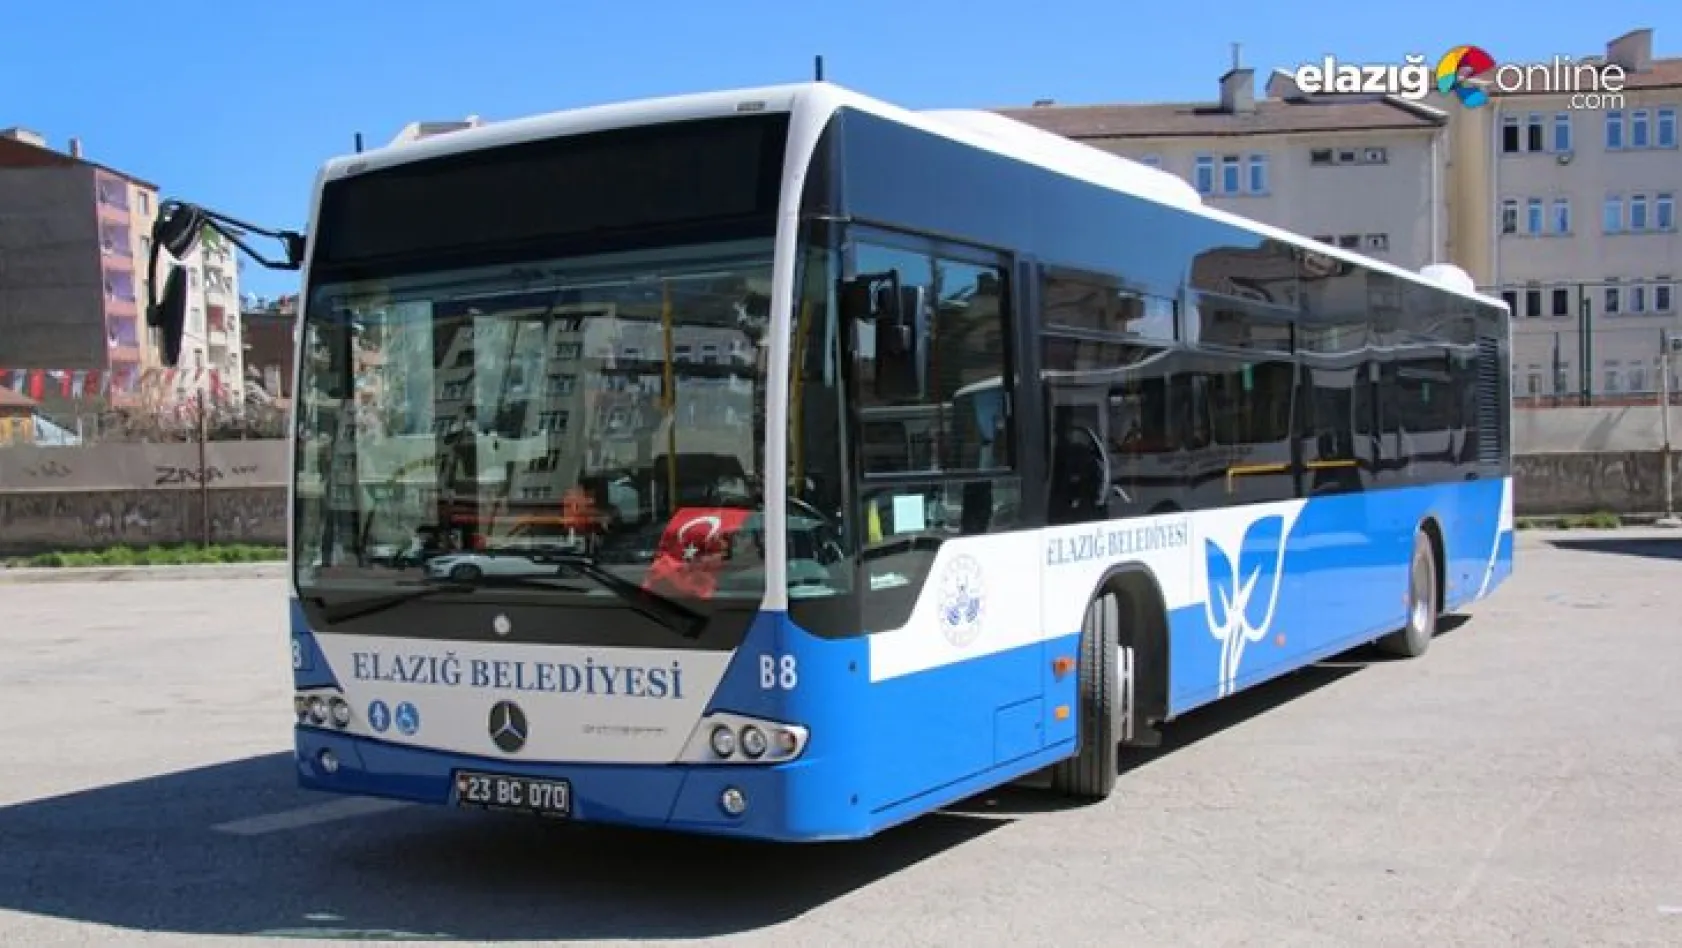 Elazığ Belediyesinden Otobüs Sefer Güzergahlarına Yeni Düzenleme